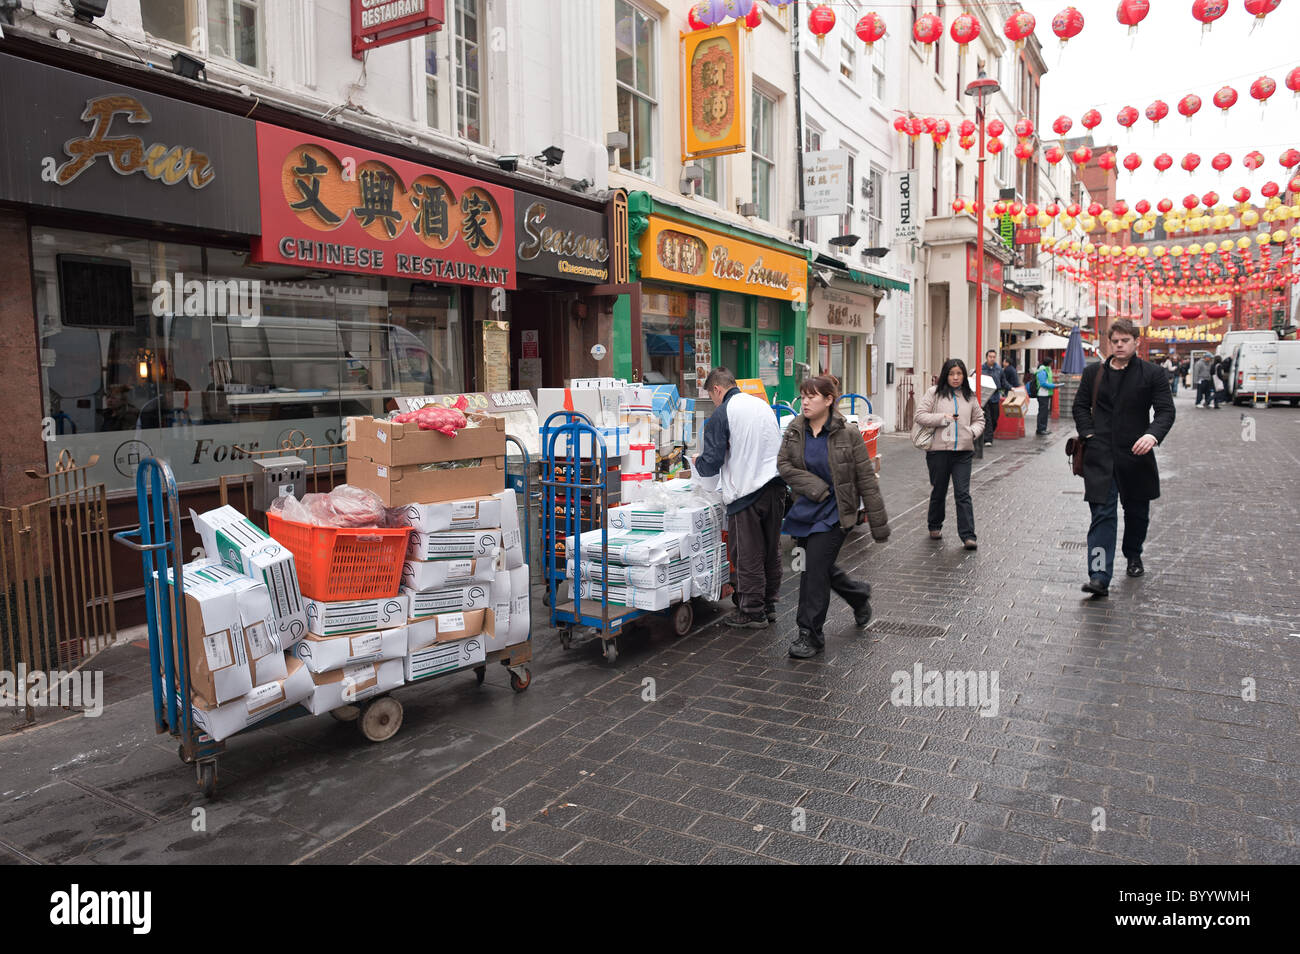 Les préparatifs pour le Nouvel An chinois sur Gerrard Street, Chinatown, Soho. Banque D'Images